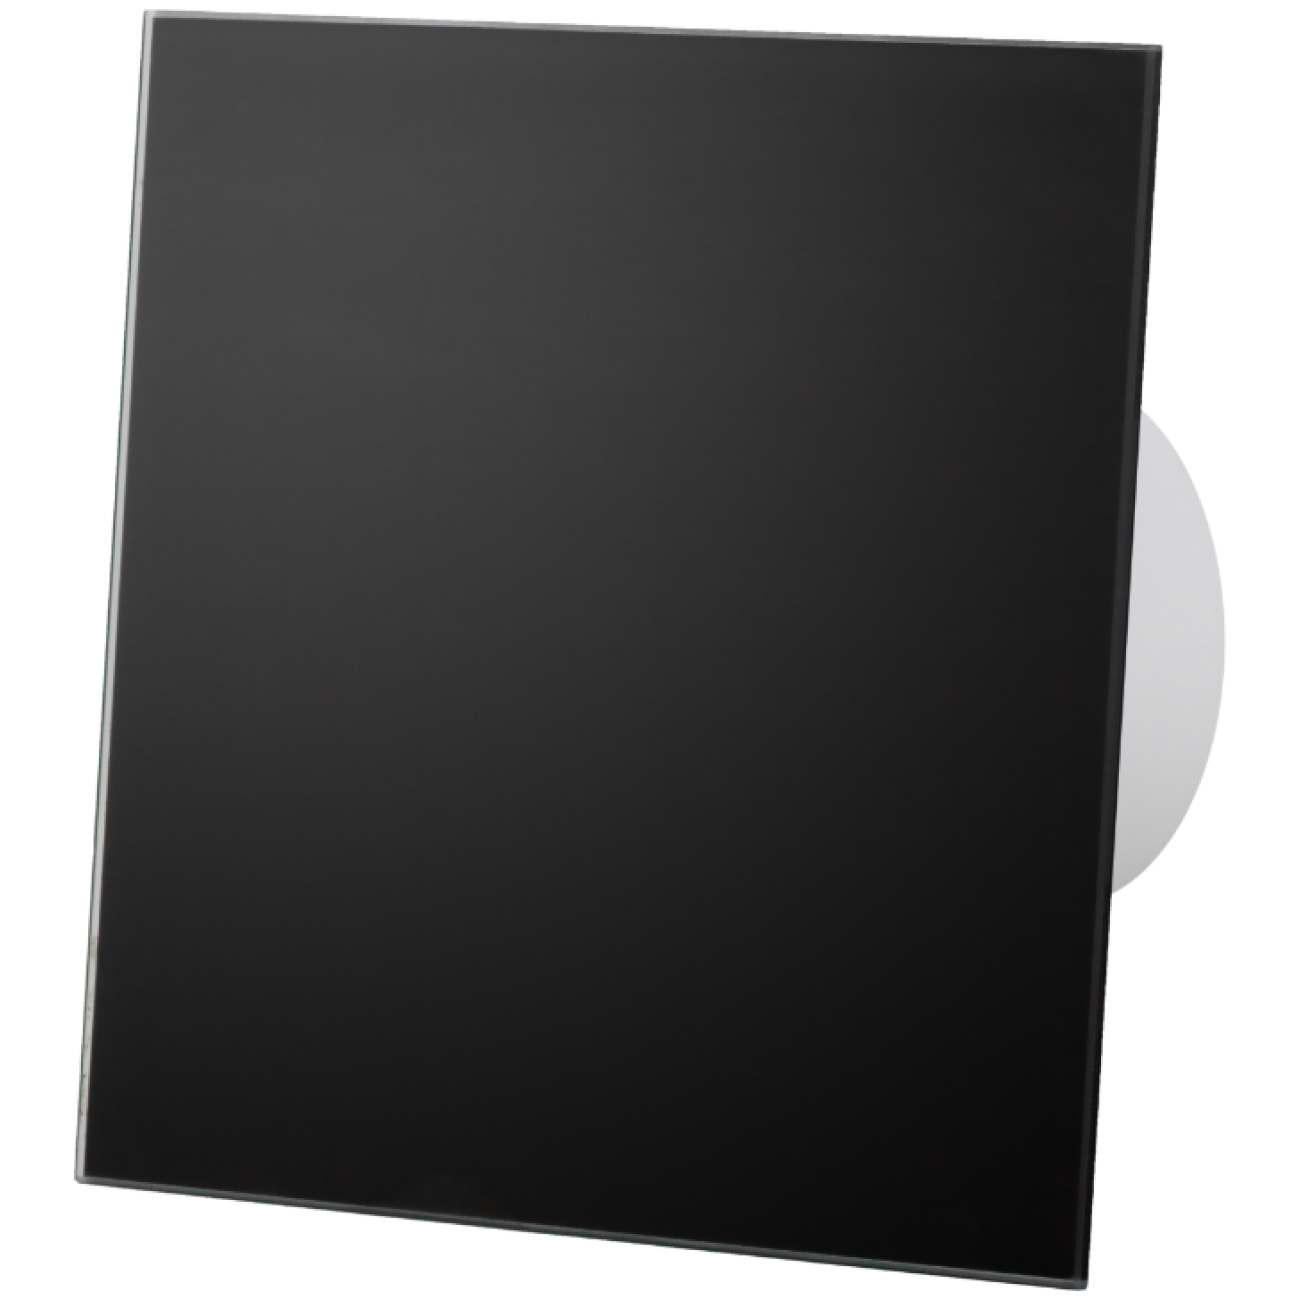 Zestaw: dRim 100 S BB wentylator + Panel szklany czarny mat